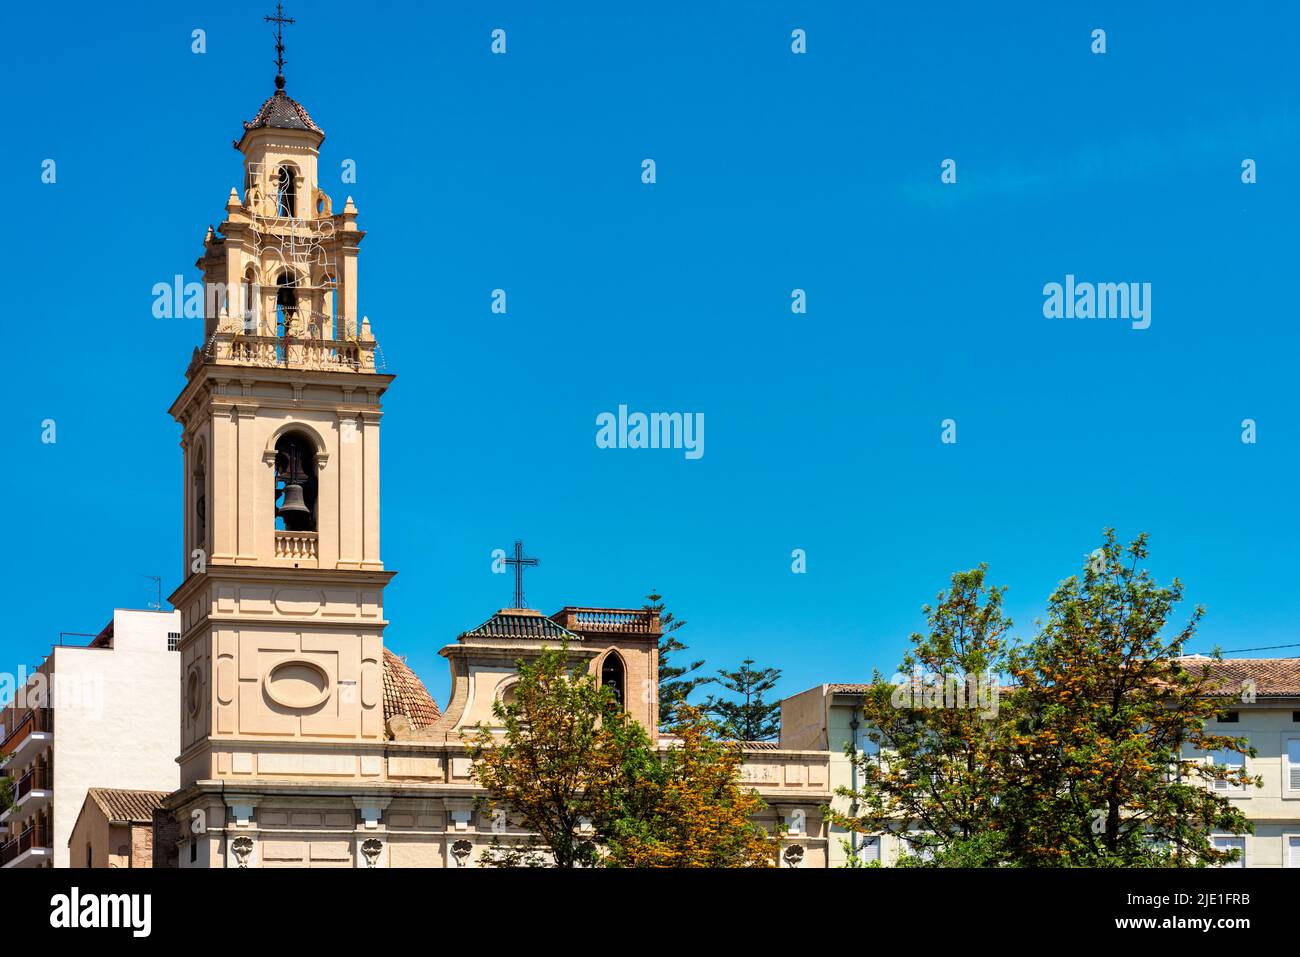 The Church of El Salvador and Santa Monica (Parroquia del Salvador y Santa Mónica) in Valencia, Spain Stock Photo